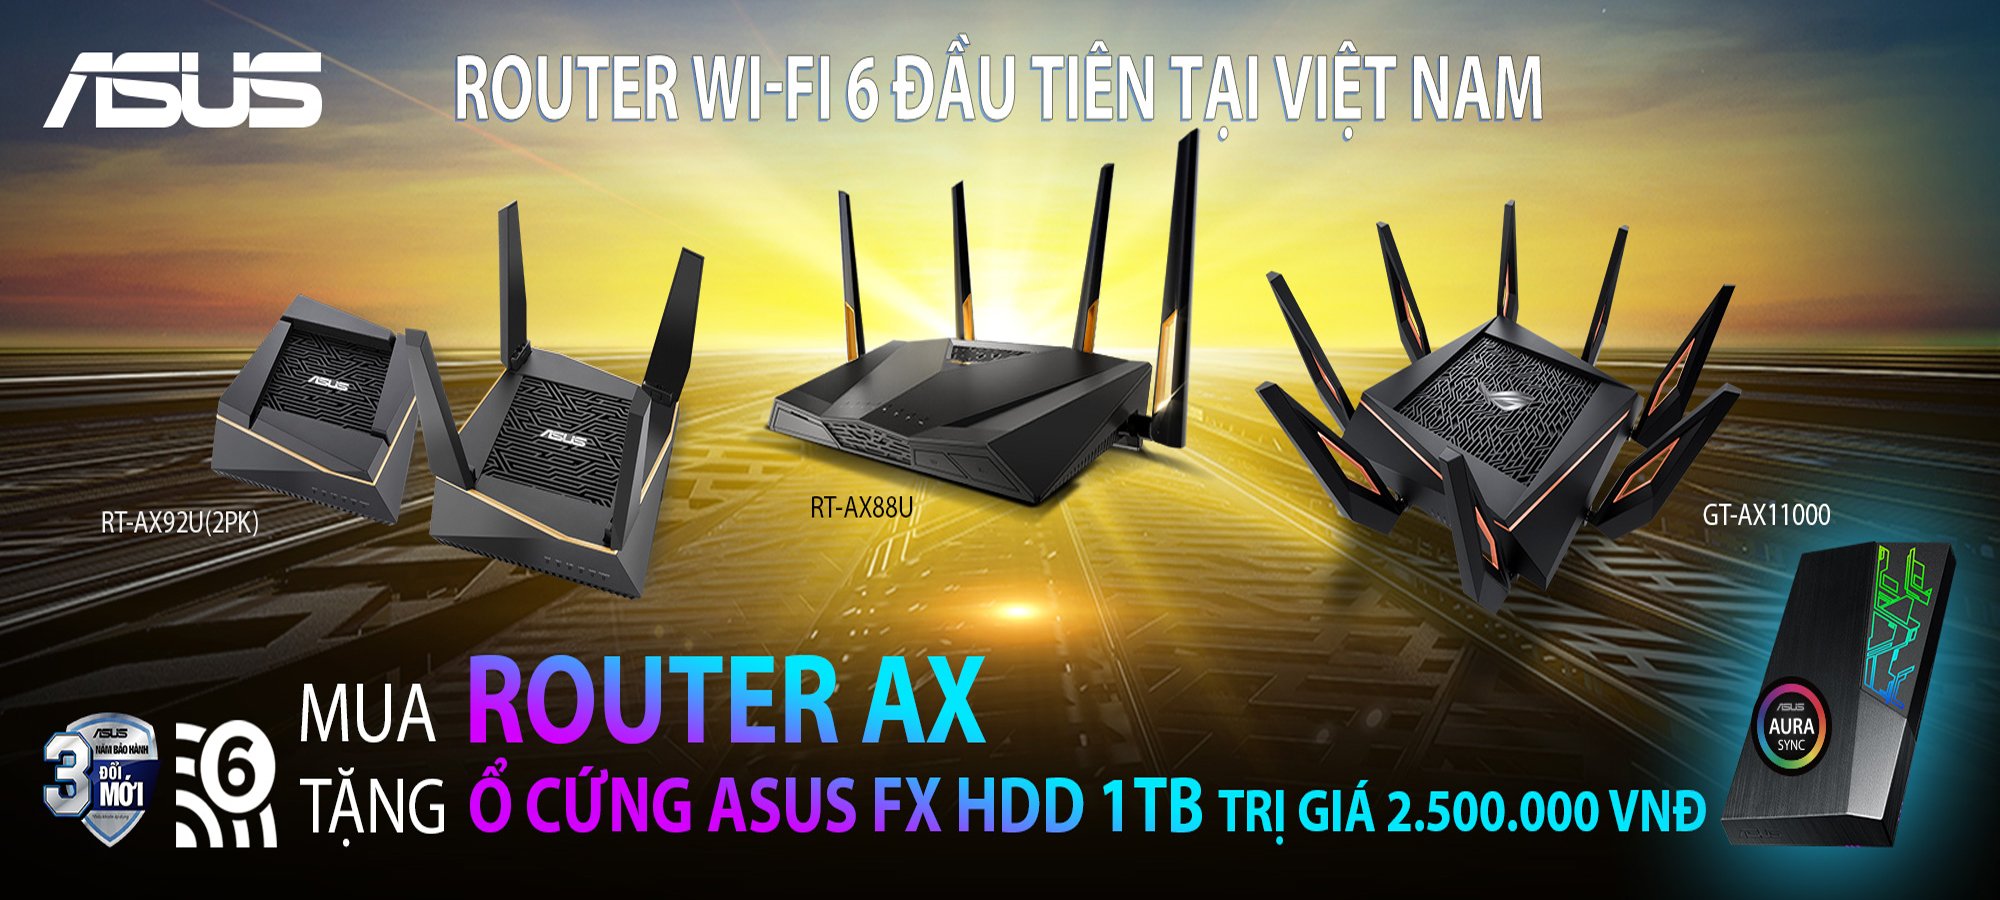 Mua Router ASUS dòng AX nhận ngay ổ cứng gắn ngoài ASUS FX HDD 1TB